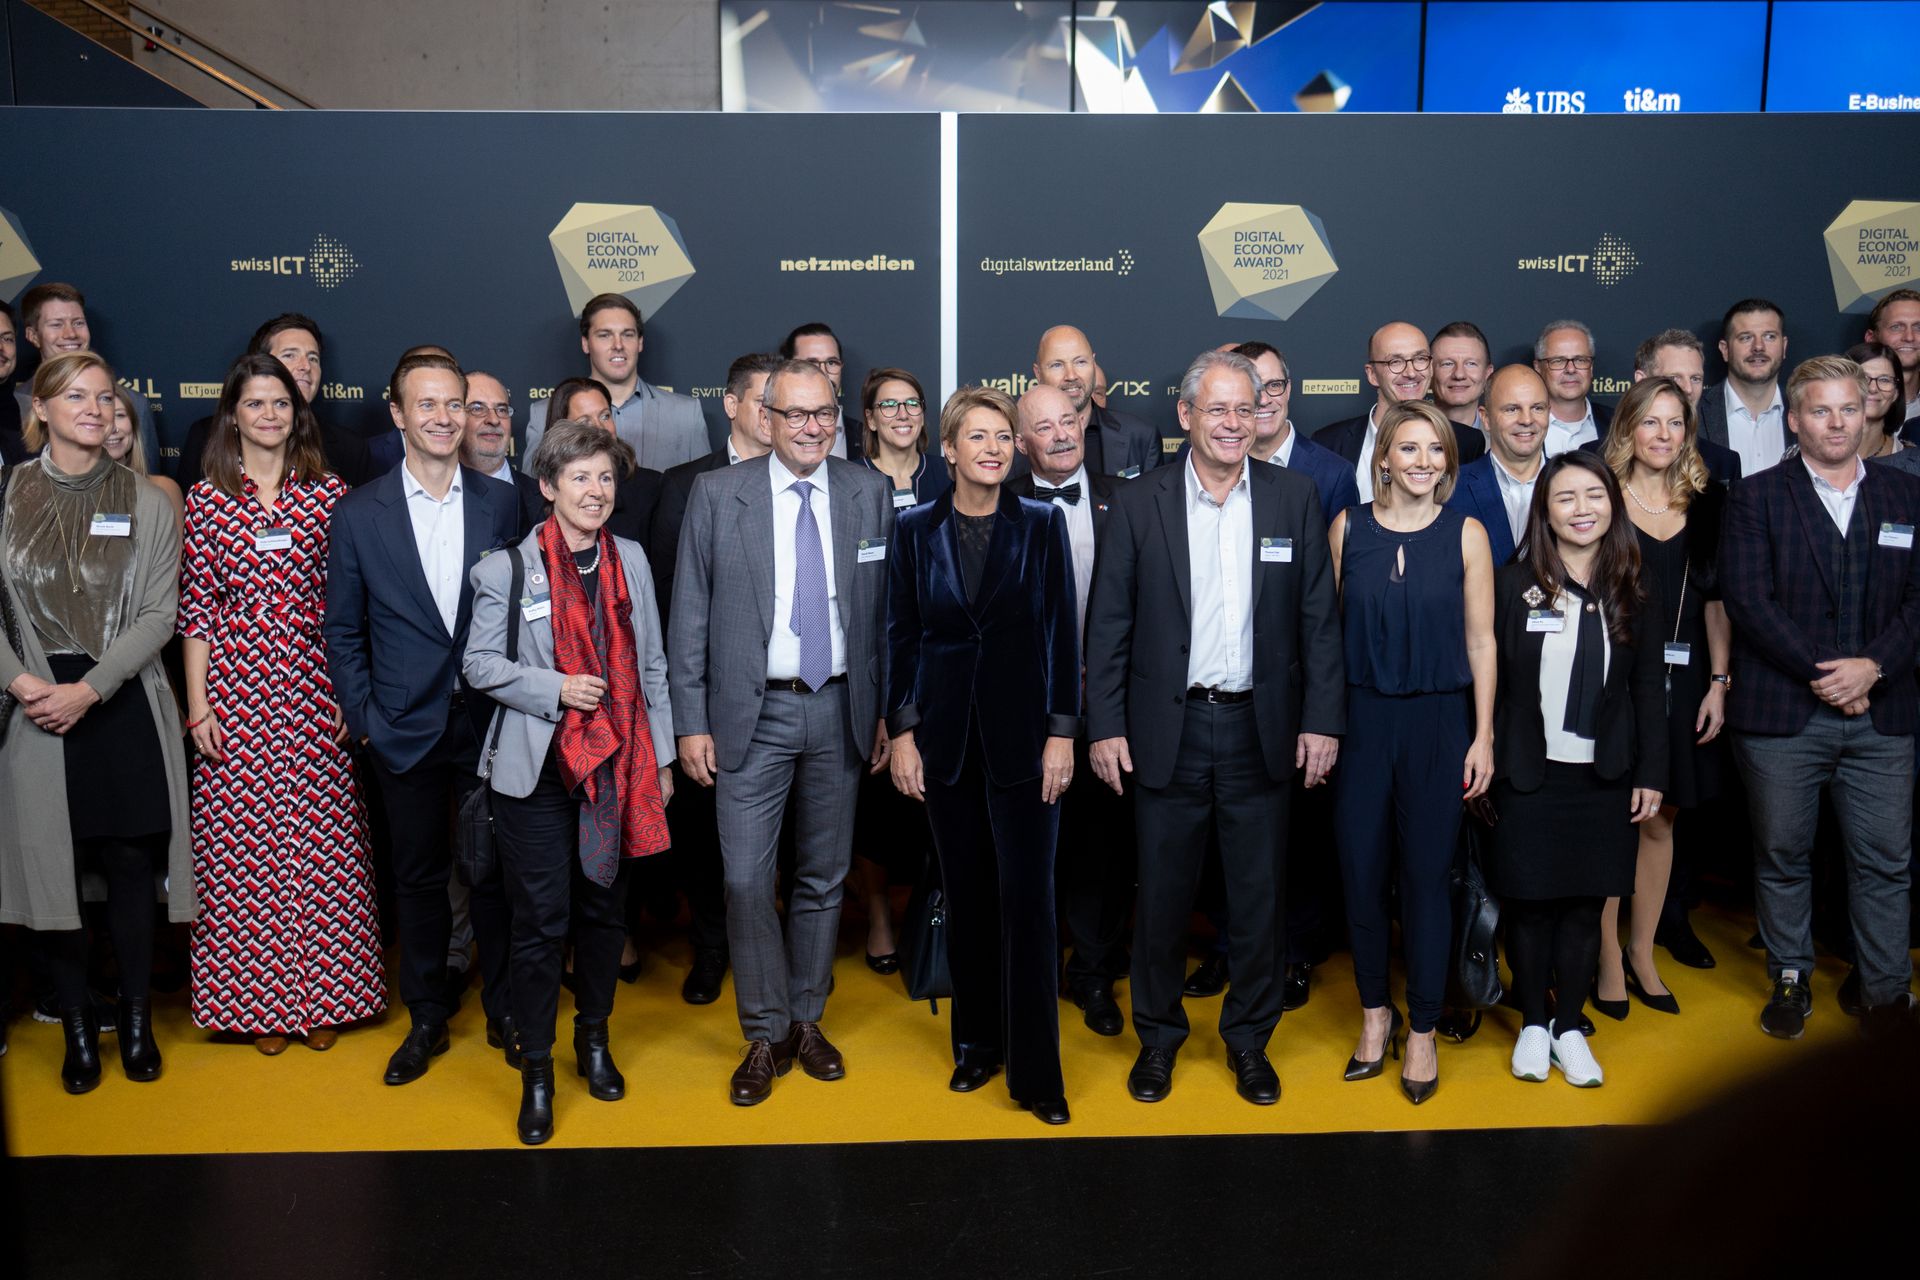 Parata di VIP alla cerimonia di premiazione dei "Digital Economy Award" in occasione della "Giornata Digitale Svizzera" del 10 novembre 2021